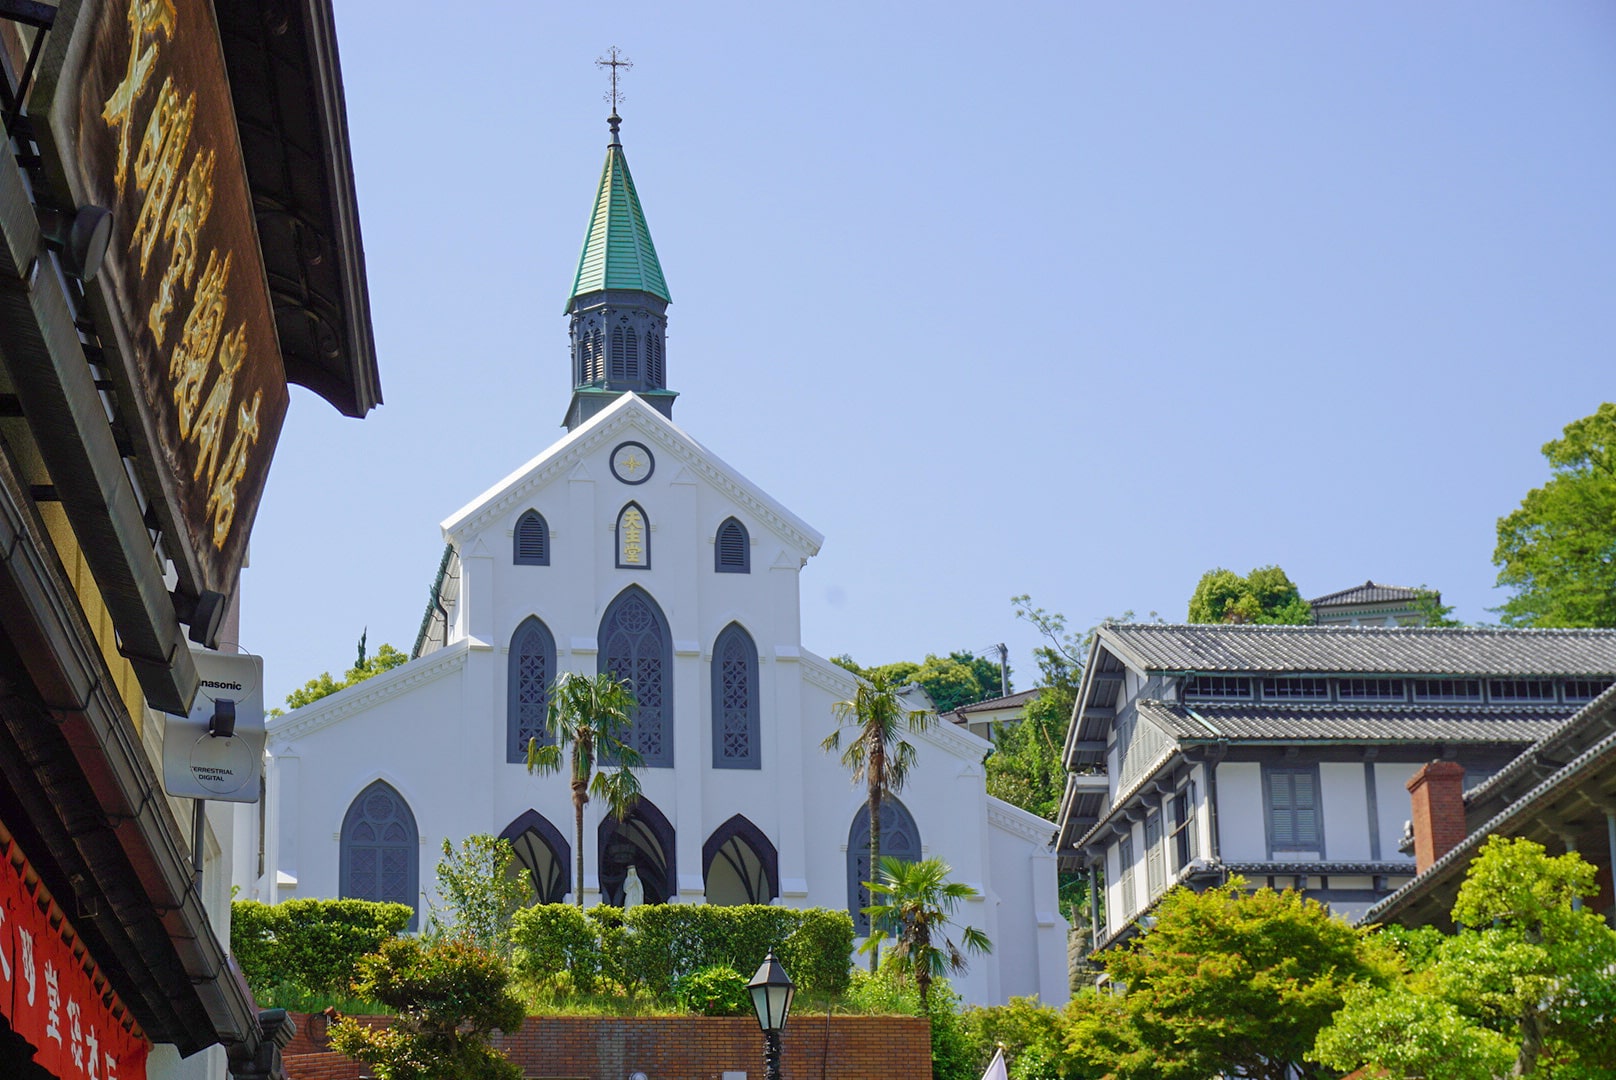 Oura church in Nagasaki